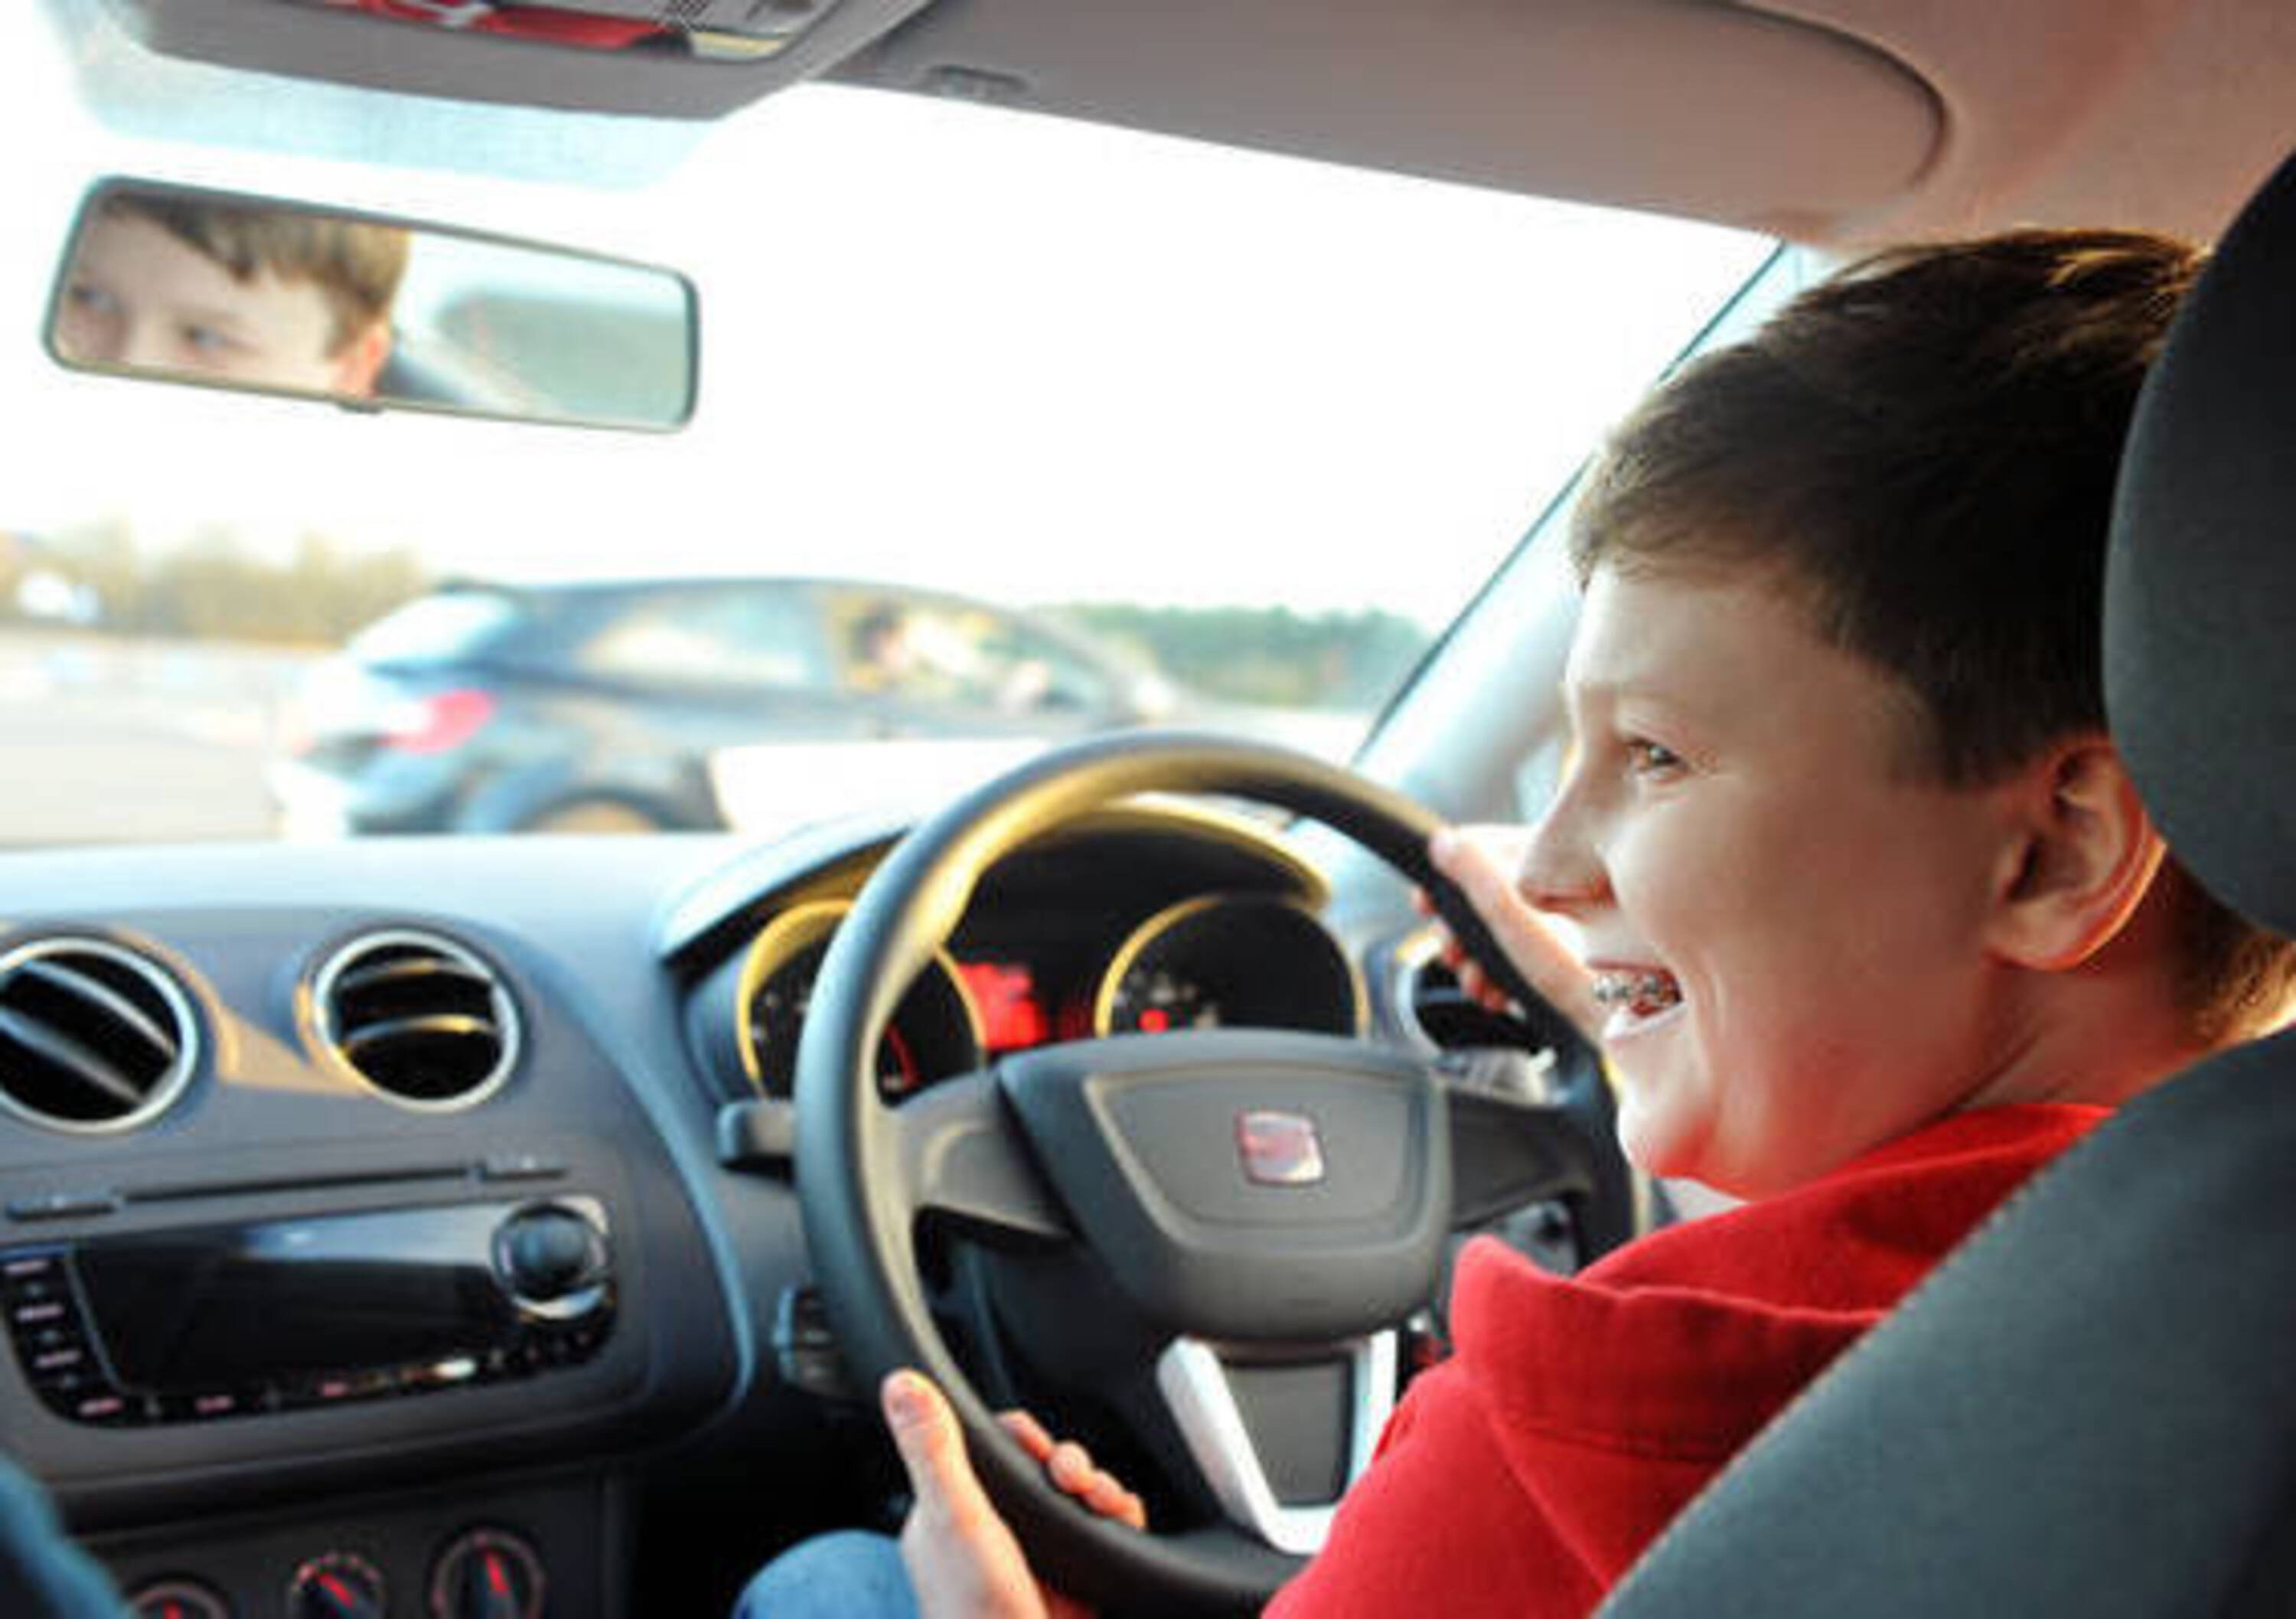 Imparare a guidare tra gli 11 ed i 17 anni migliorebbe la sicurezza